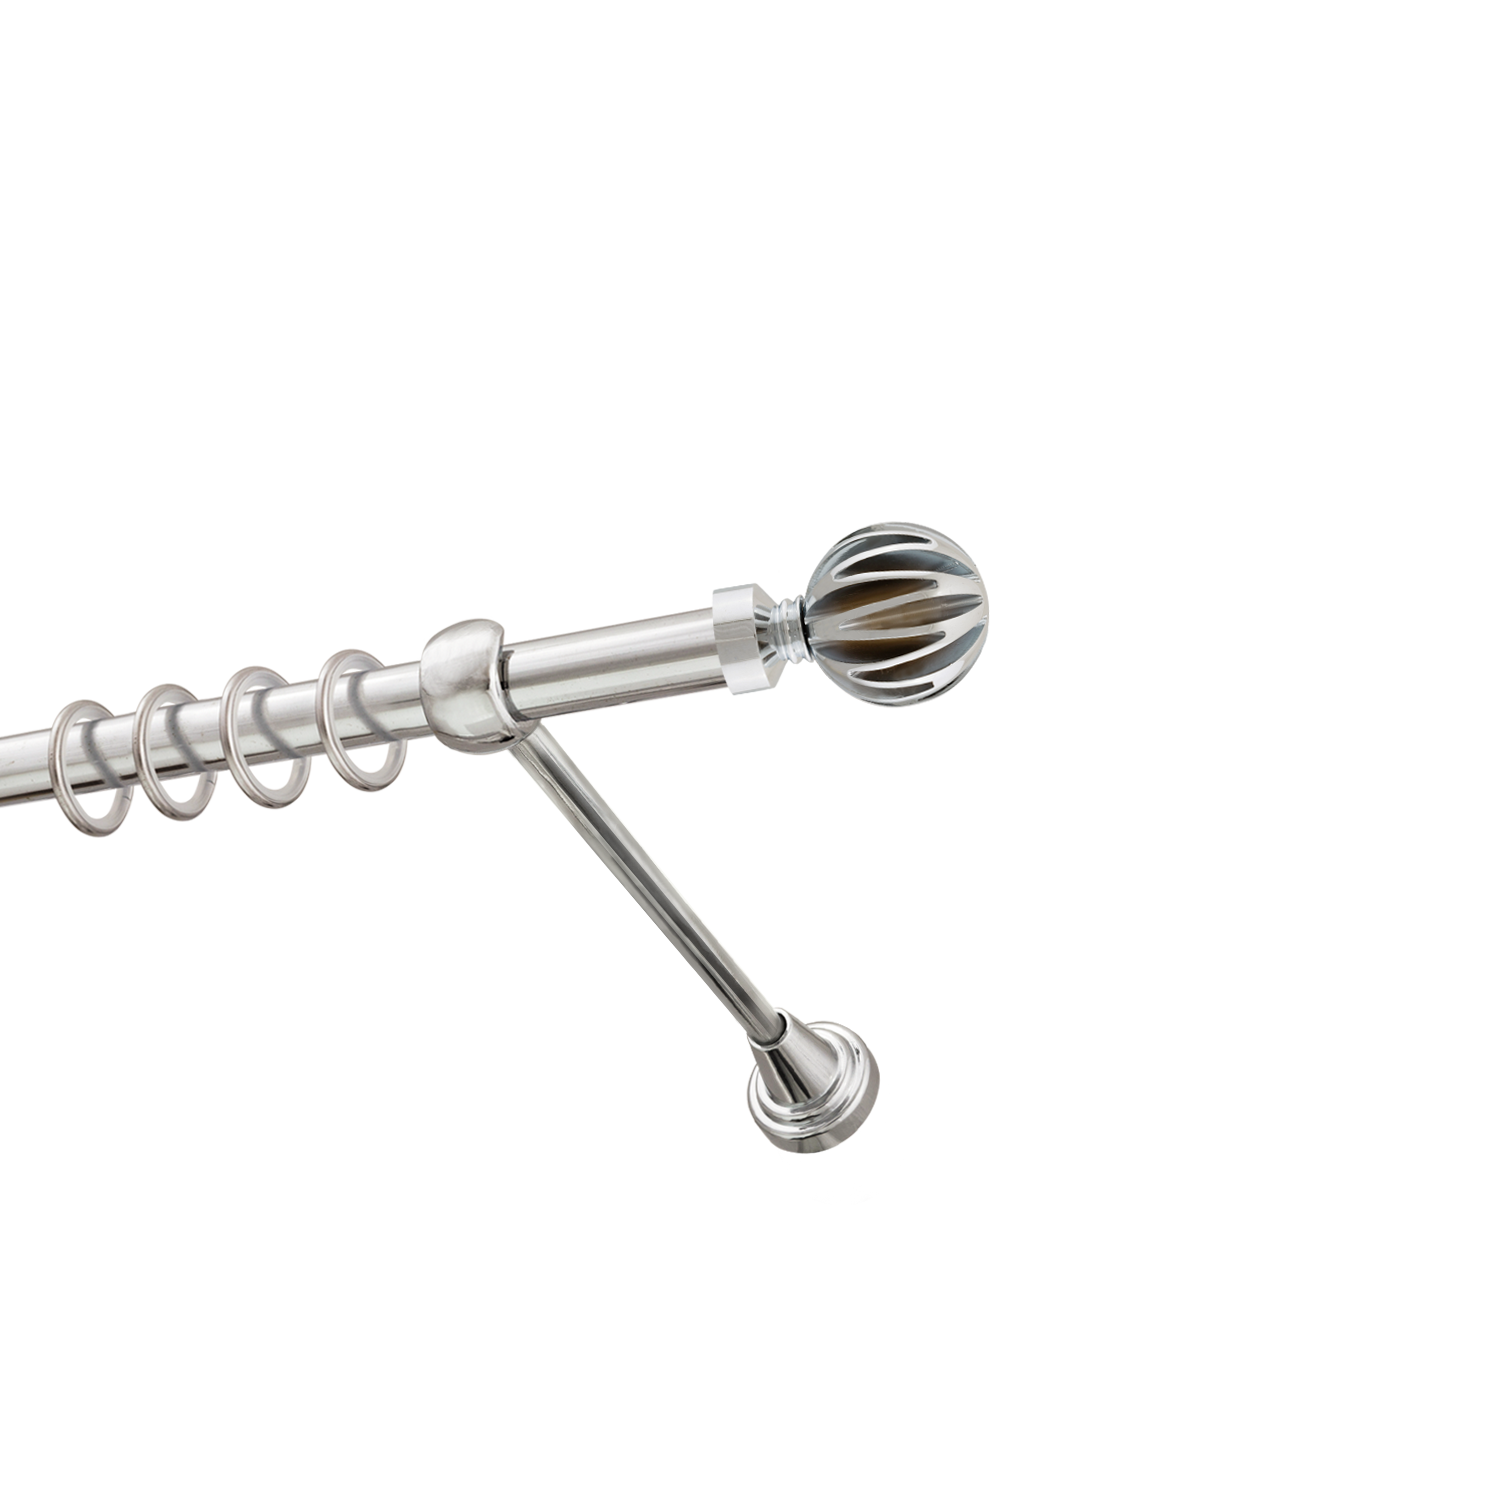 Металлический карниз для штор Шафран, однорядный 16 мм, серебро, гладкая штанга, длина 300 см - фото Wikidecor.ru